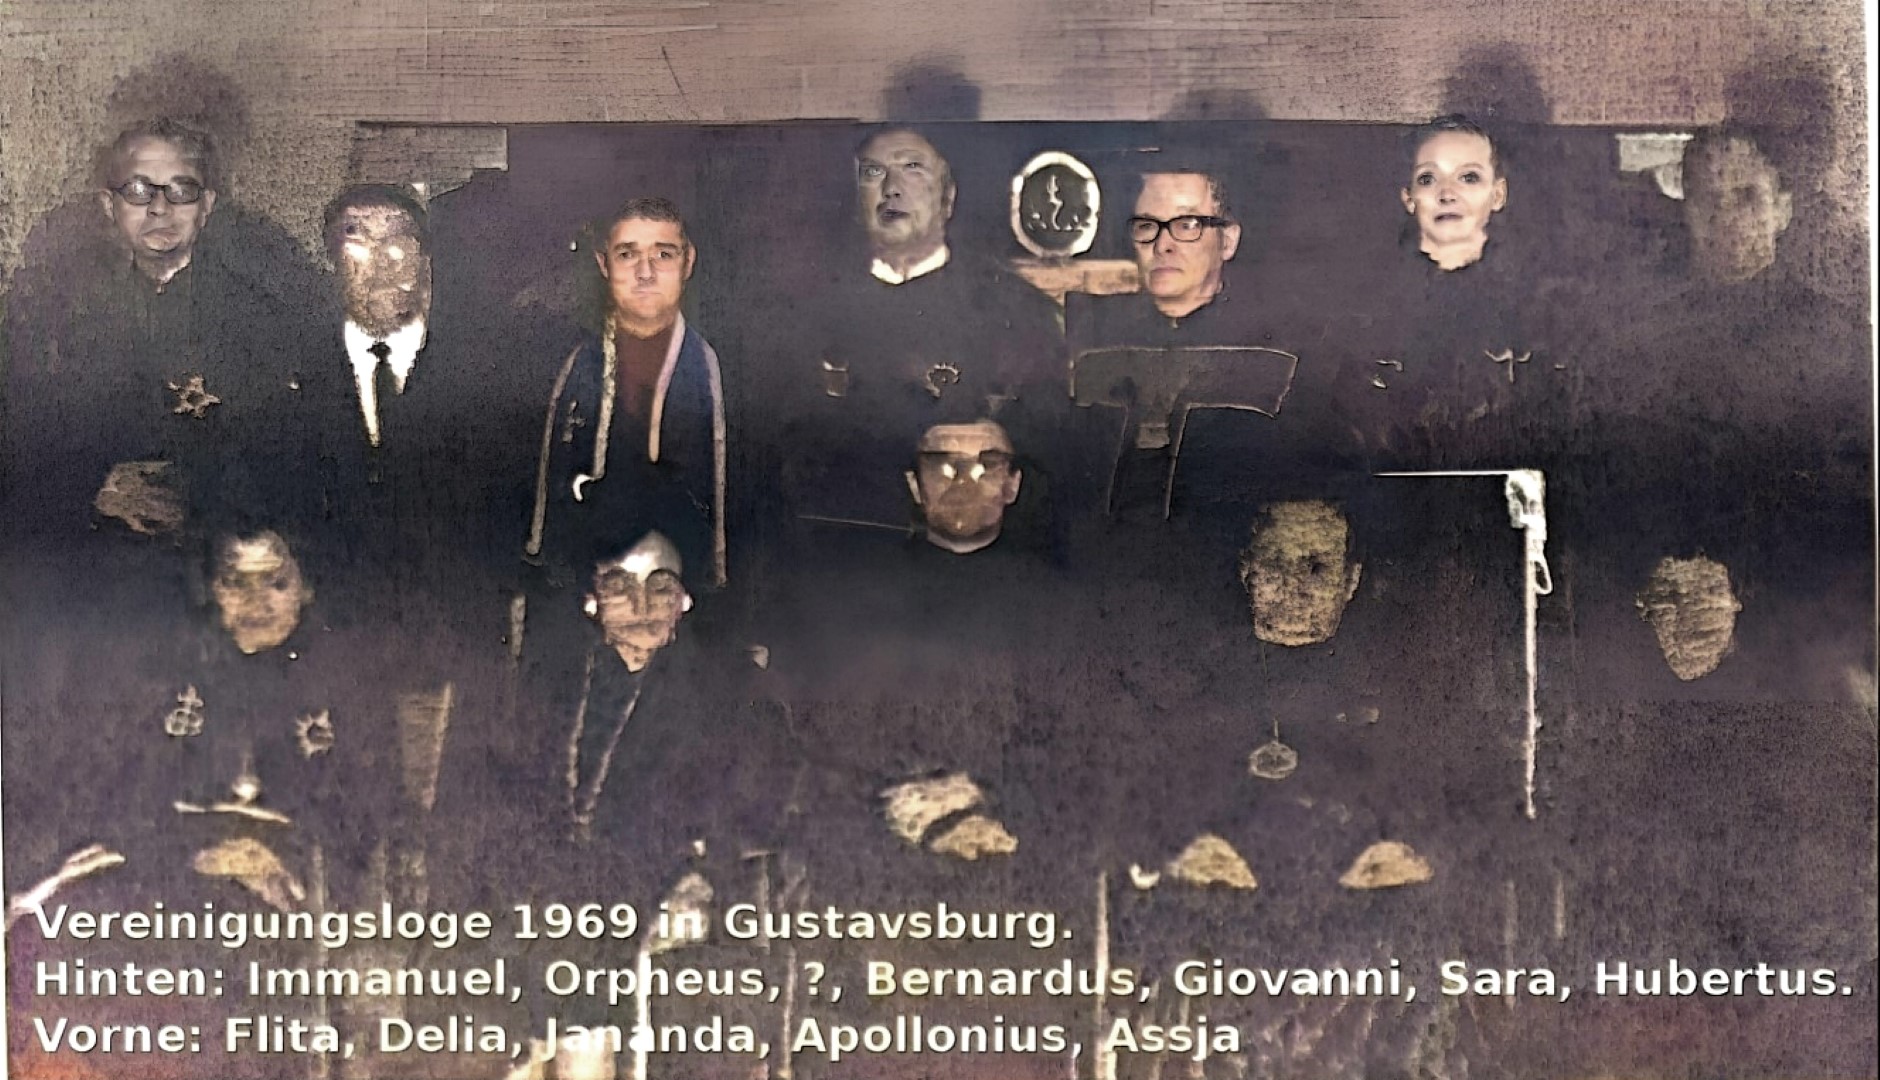 Vereinigungsloge der Fraternitas Saturni 1969 in Gustavsburg. Johannes Maikowski, Horst Kropp, Karl Wedler, Walter Jantschik, Irmgard Maikowski